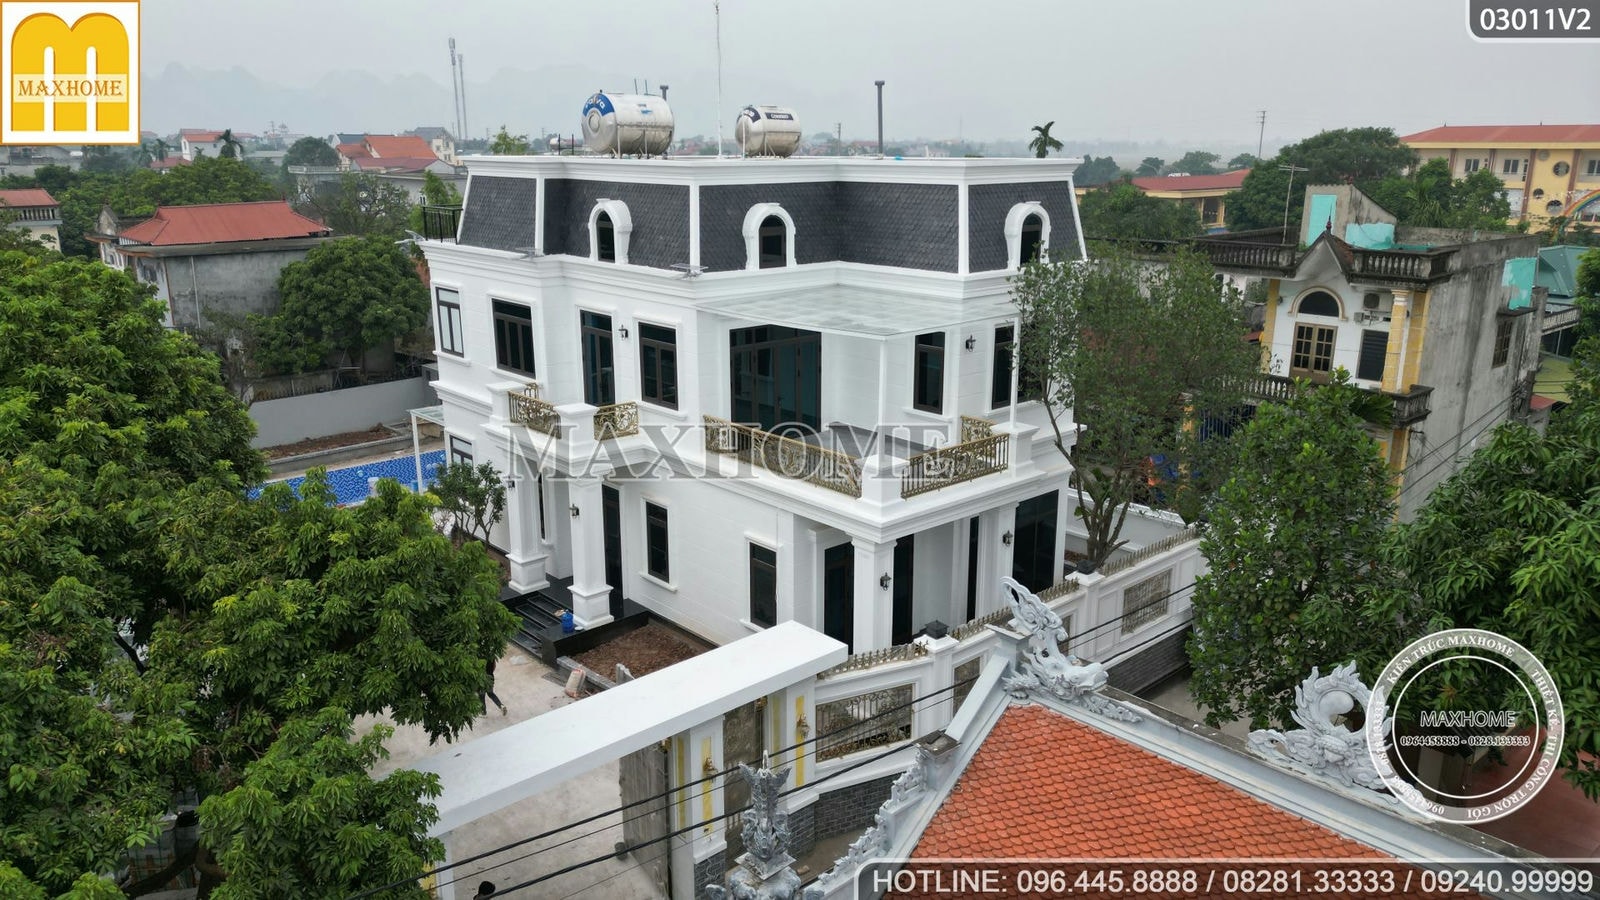 Maxhome thi công biệt thự hơn 300m2 đẹp như 3D tại Hà Nội | MH00511